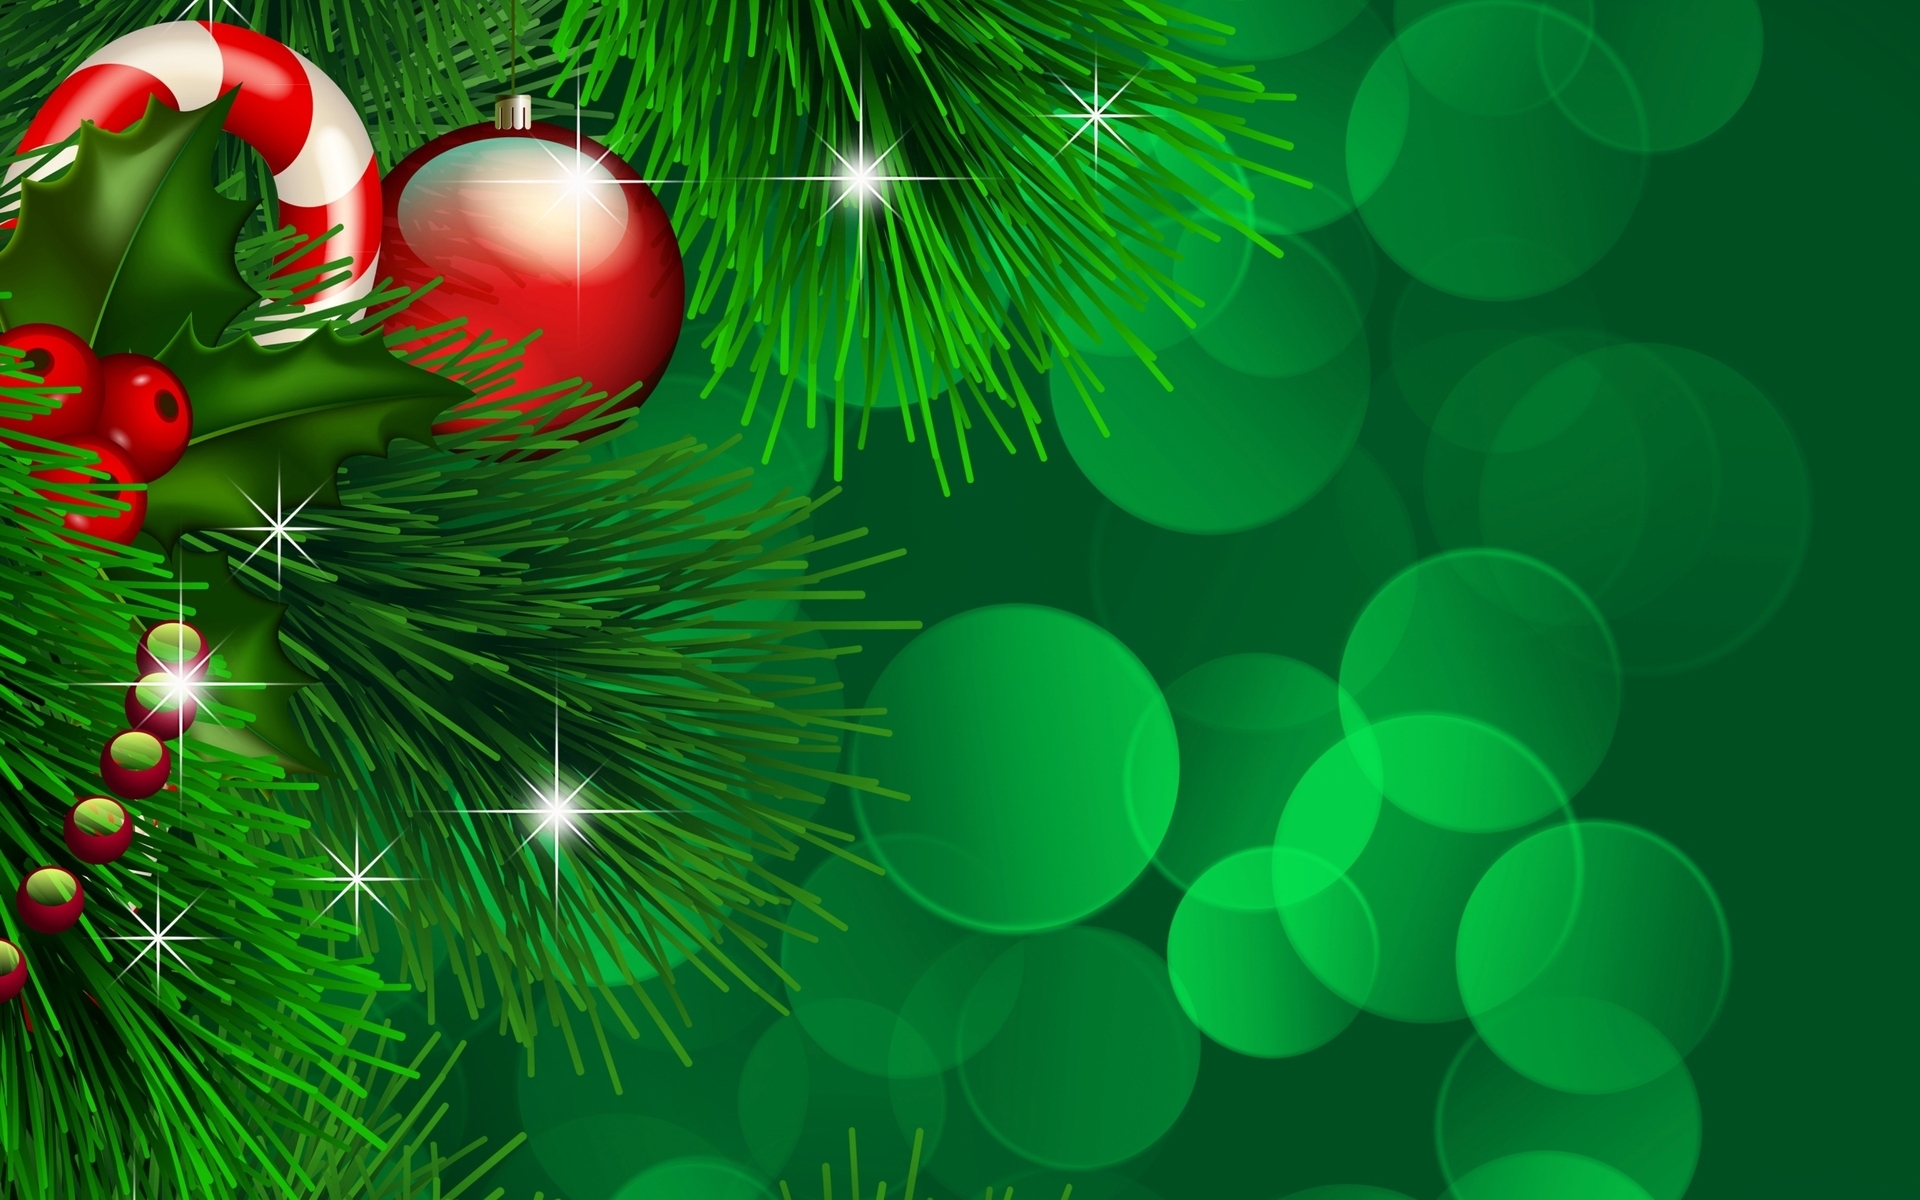 Скачать обои бесплатно Рождество (Christmas Xmas), Новый Год (New Year), Фон картинка на рабочий стол ПК